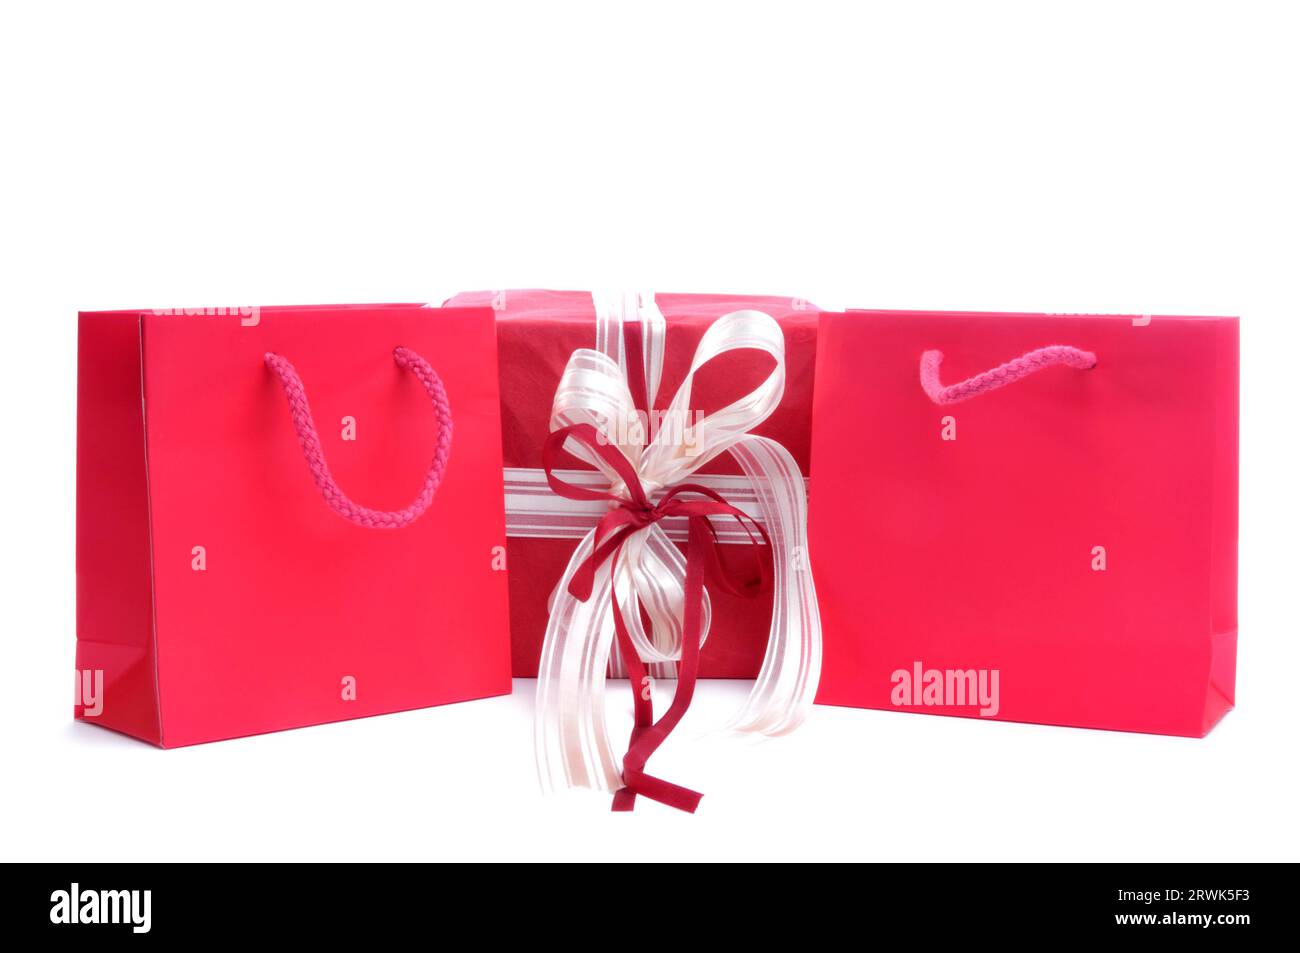 2 sacs à provisions rouges et un cadeau. Cadeaux symboliques de Noël Banque D'Images